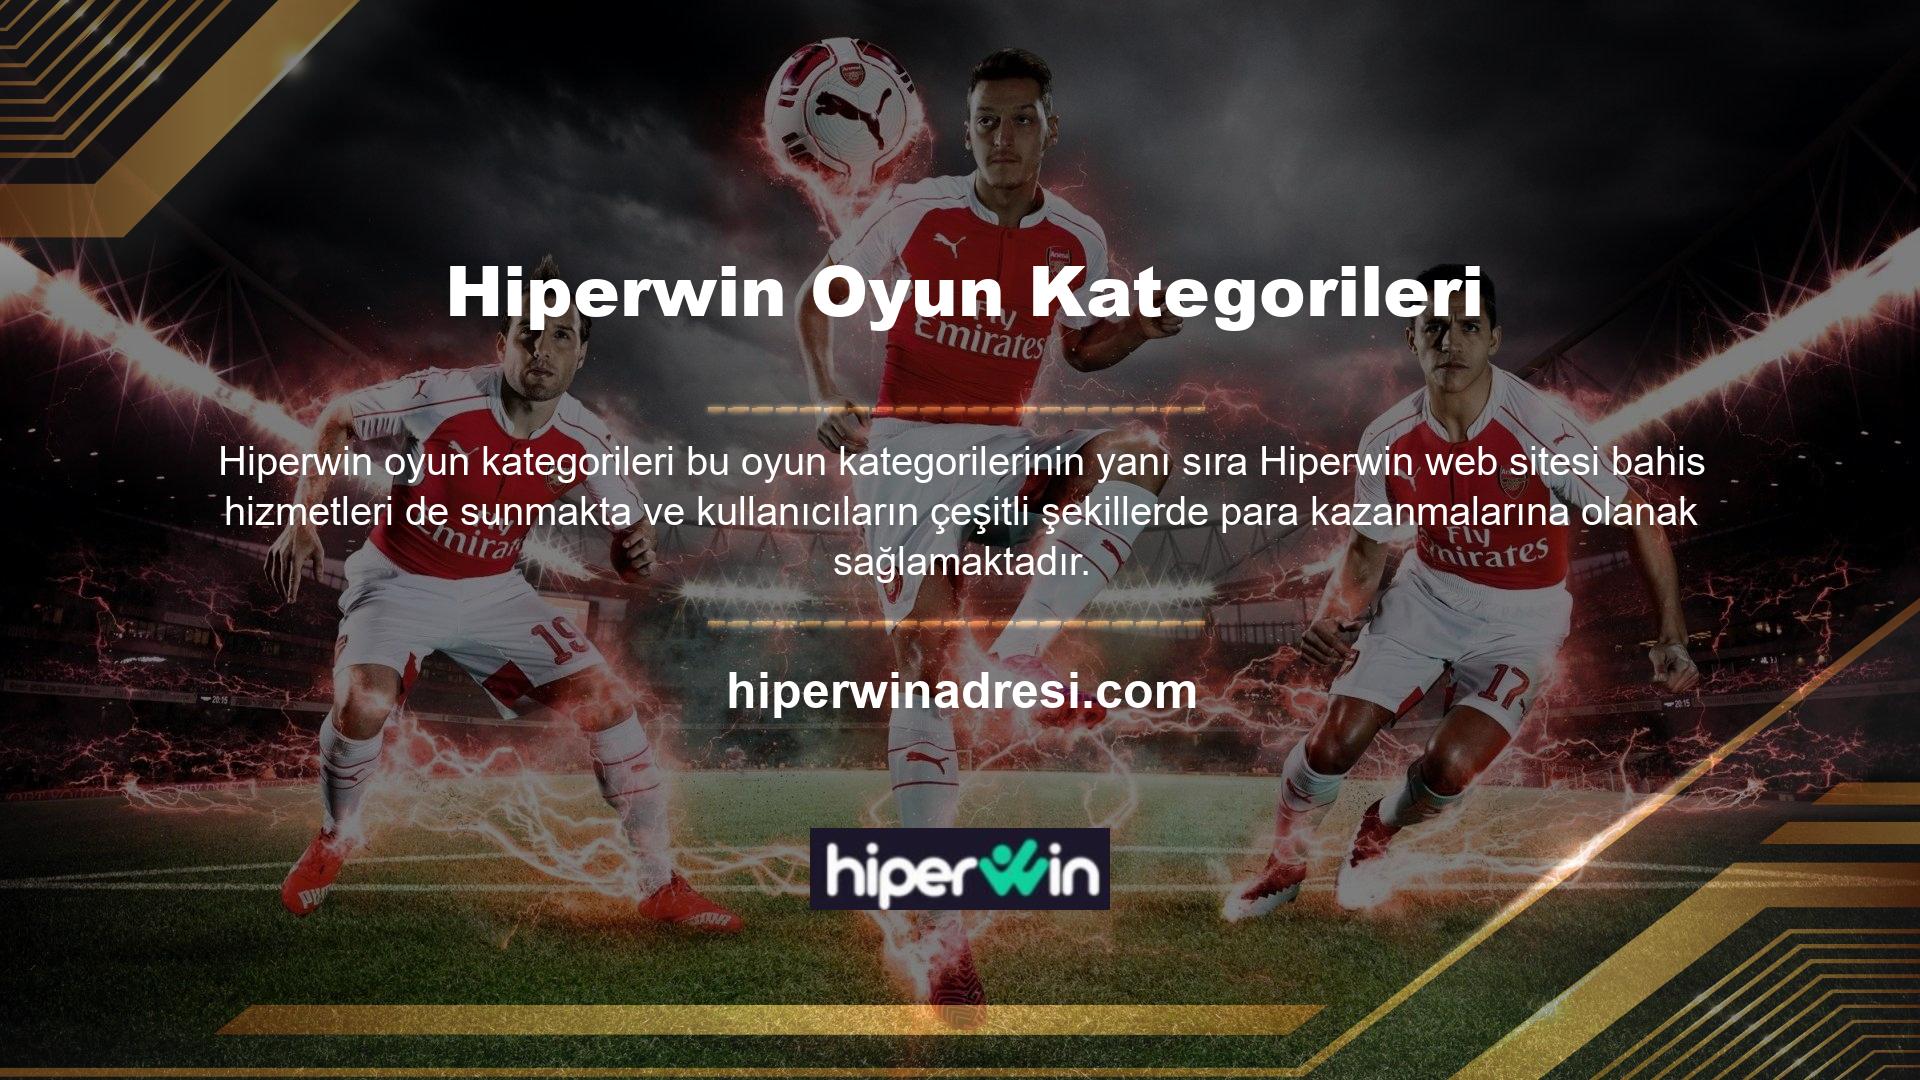 Hiperwin markası, yabancı forum sitelerinde arama yaparken Türkiye için mutlaka görülmesi gereken bir markadır